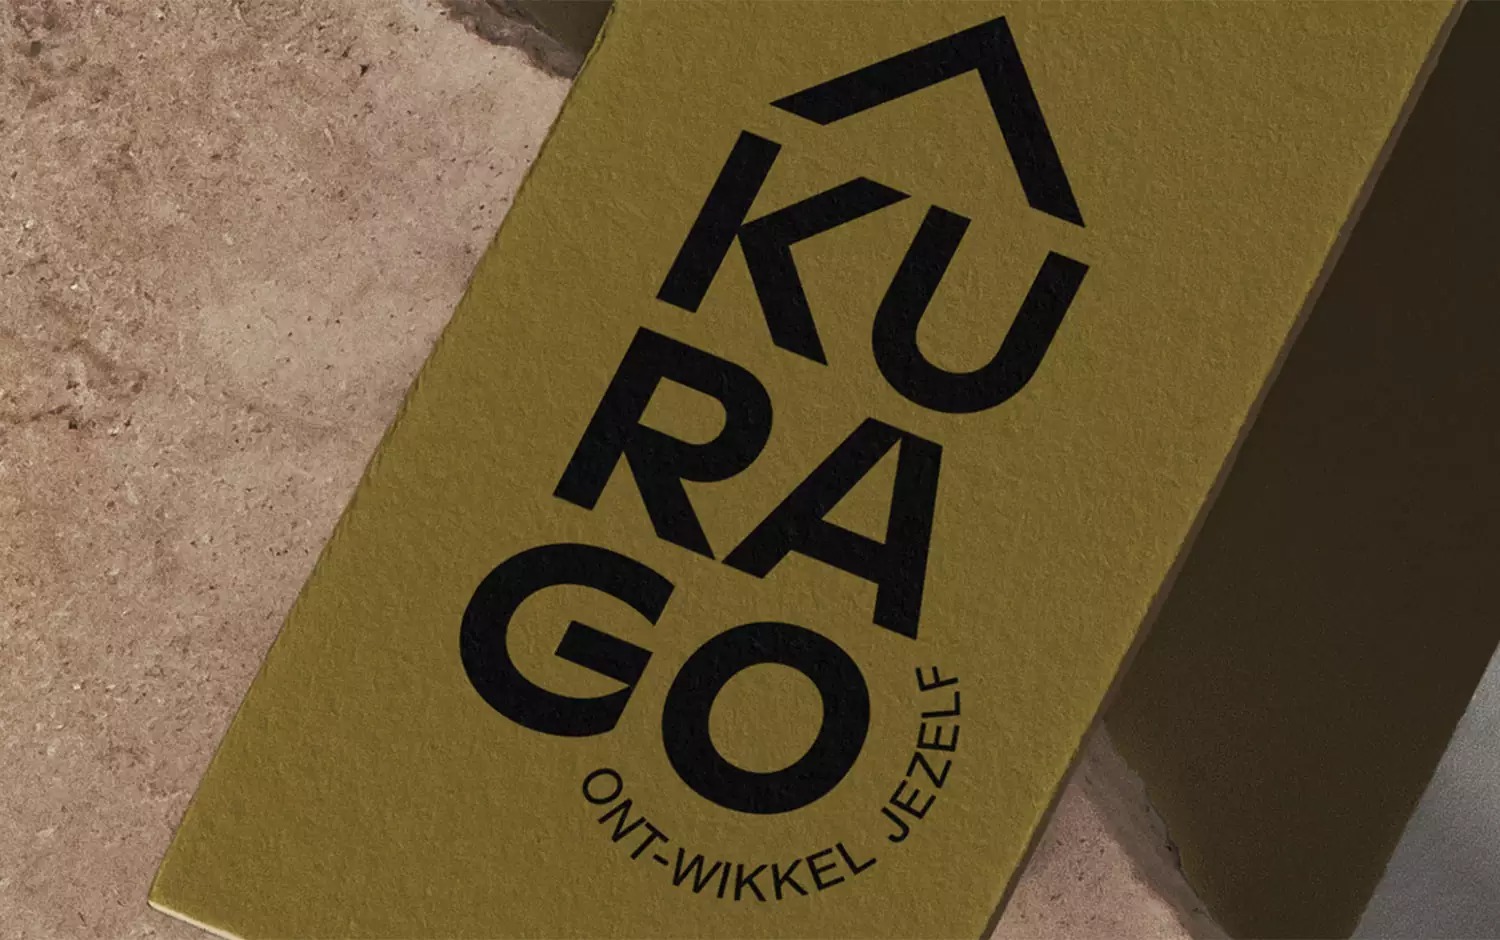 Kurago心理治疗中心品牌形象设计